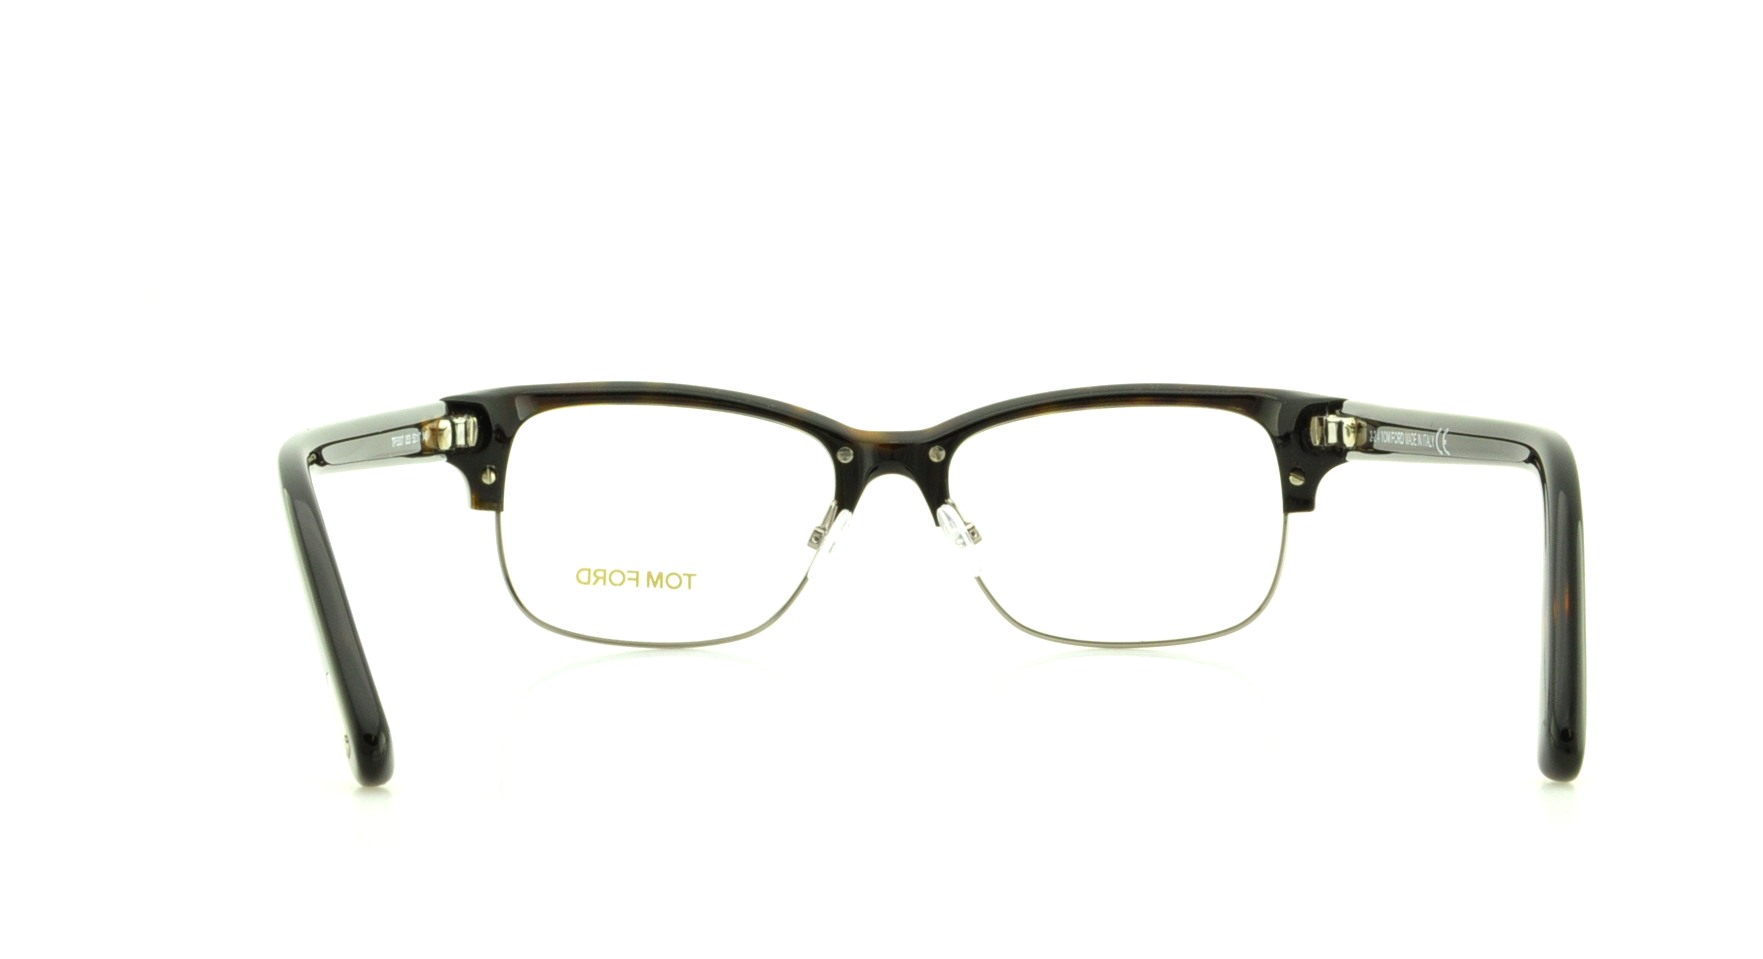 Designer Frames Outlet. Tom Ford Eyeglasses FT5307